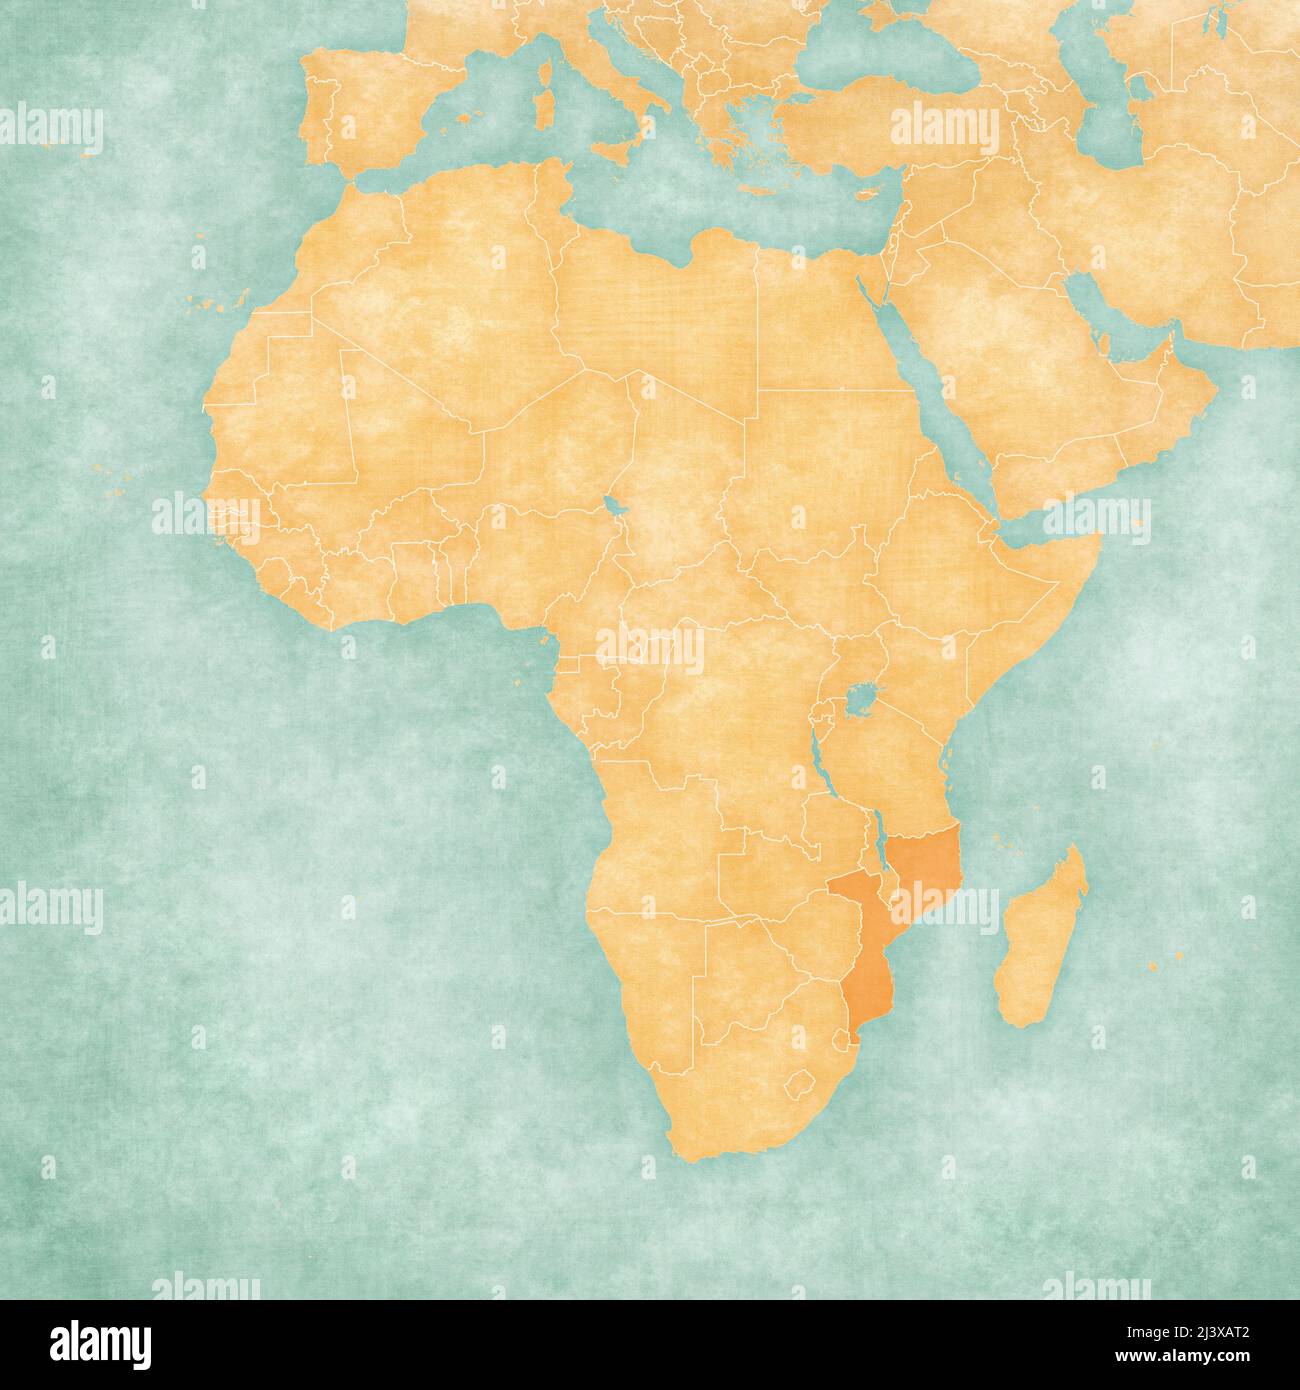 Mozambico sulla mappa dell'Africa in morbido grunge e stile vintage, come carta vecchia con pittura acquerello. Foto Stock